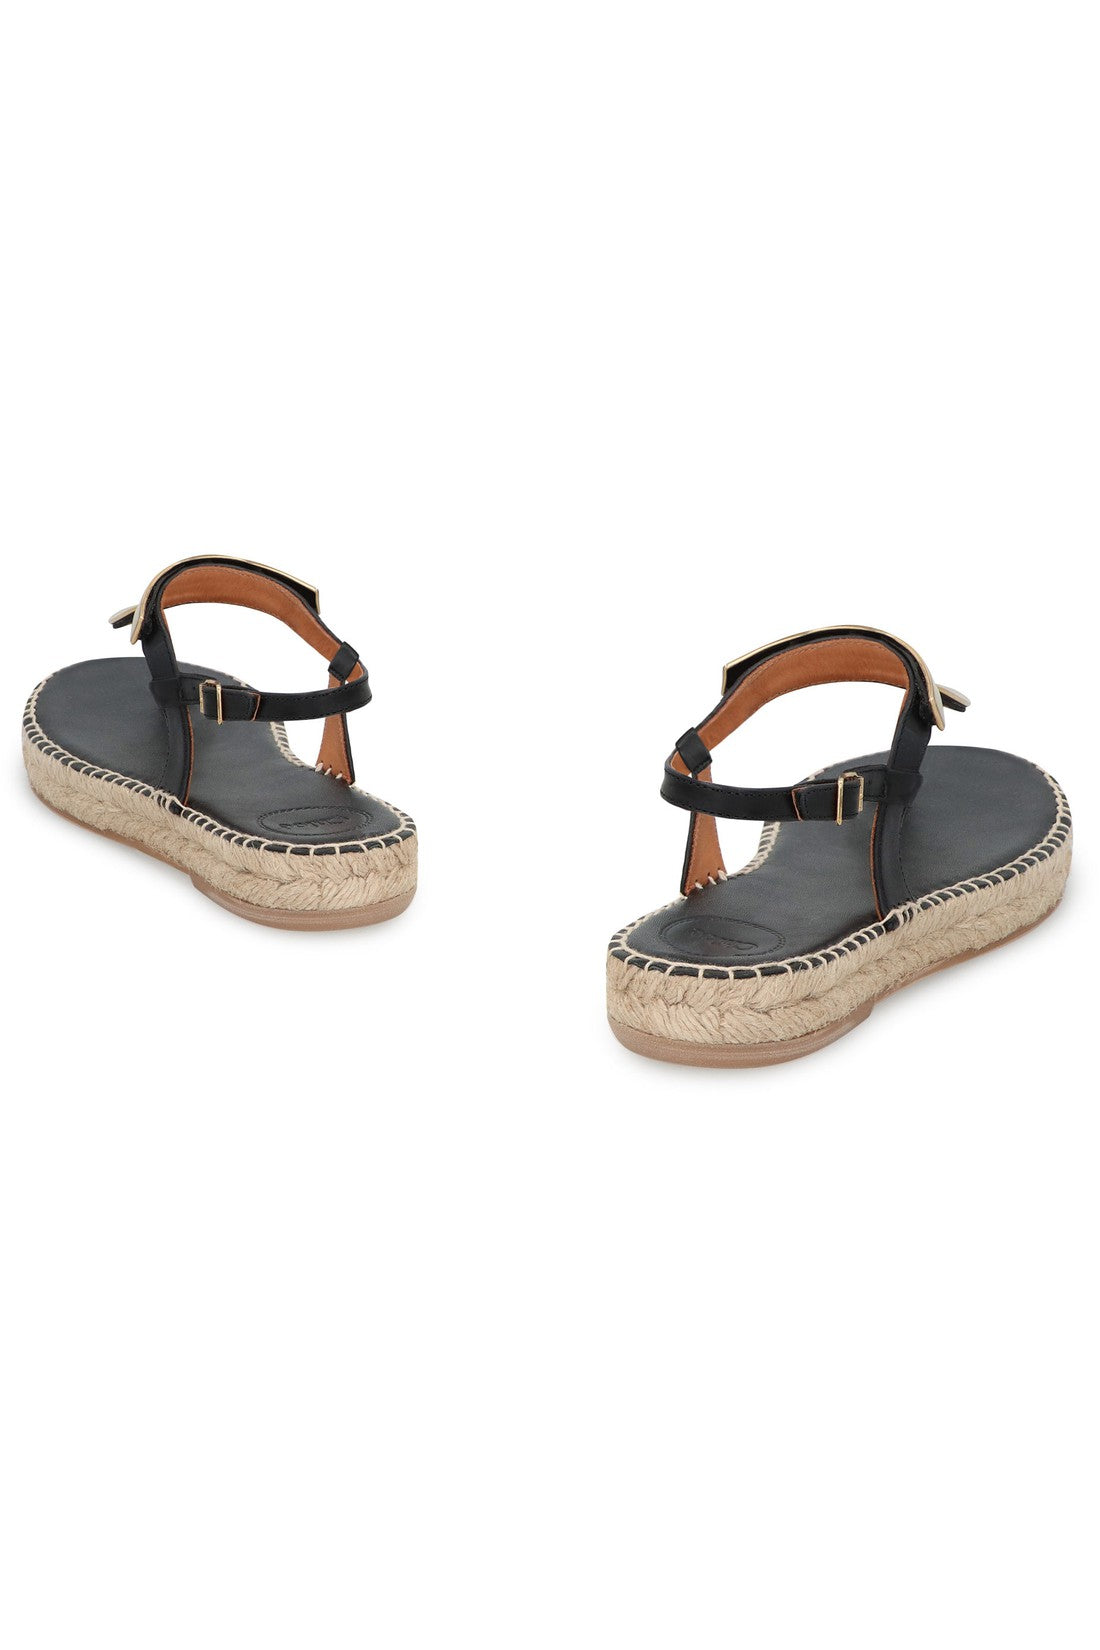 Chloé-OUTLET-SALE-Pema Leather sandals-ARCHIVIST